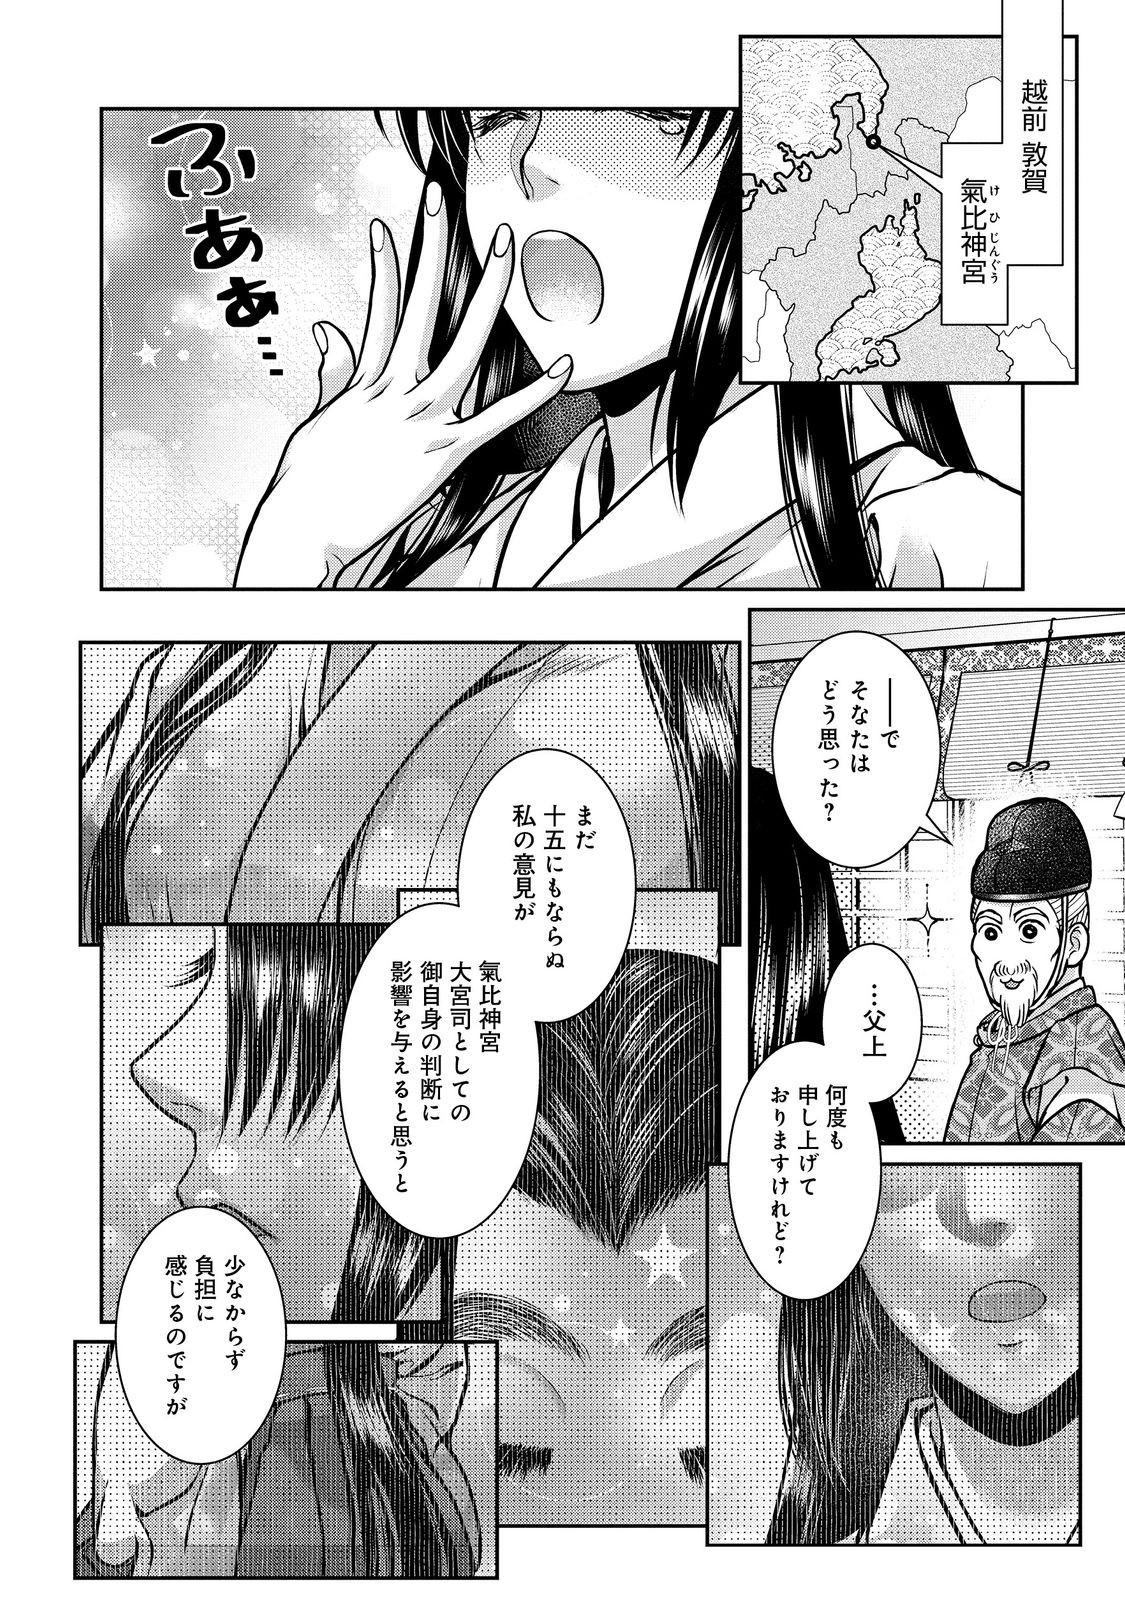 Afumi no Umi – Minamo ga Yureru Toki - Chapter 44 - Page 24